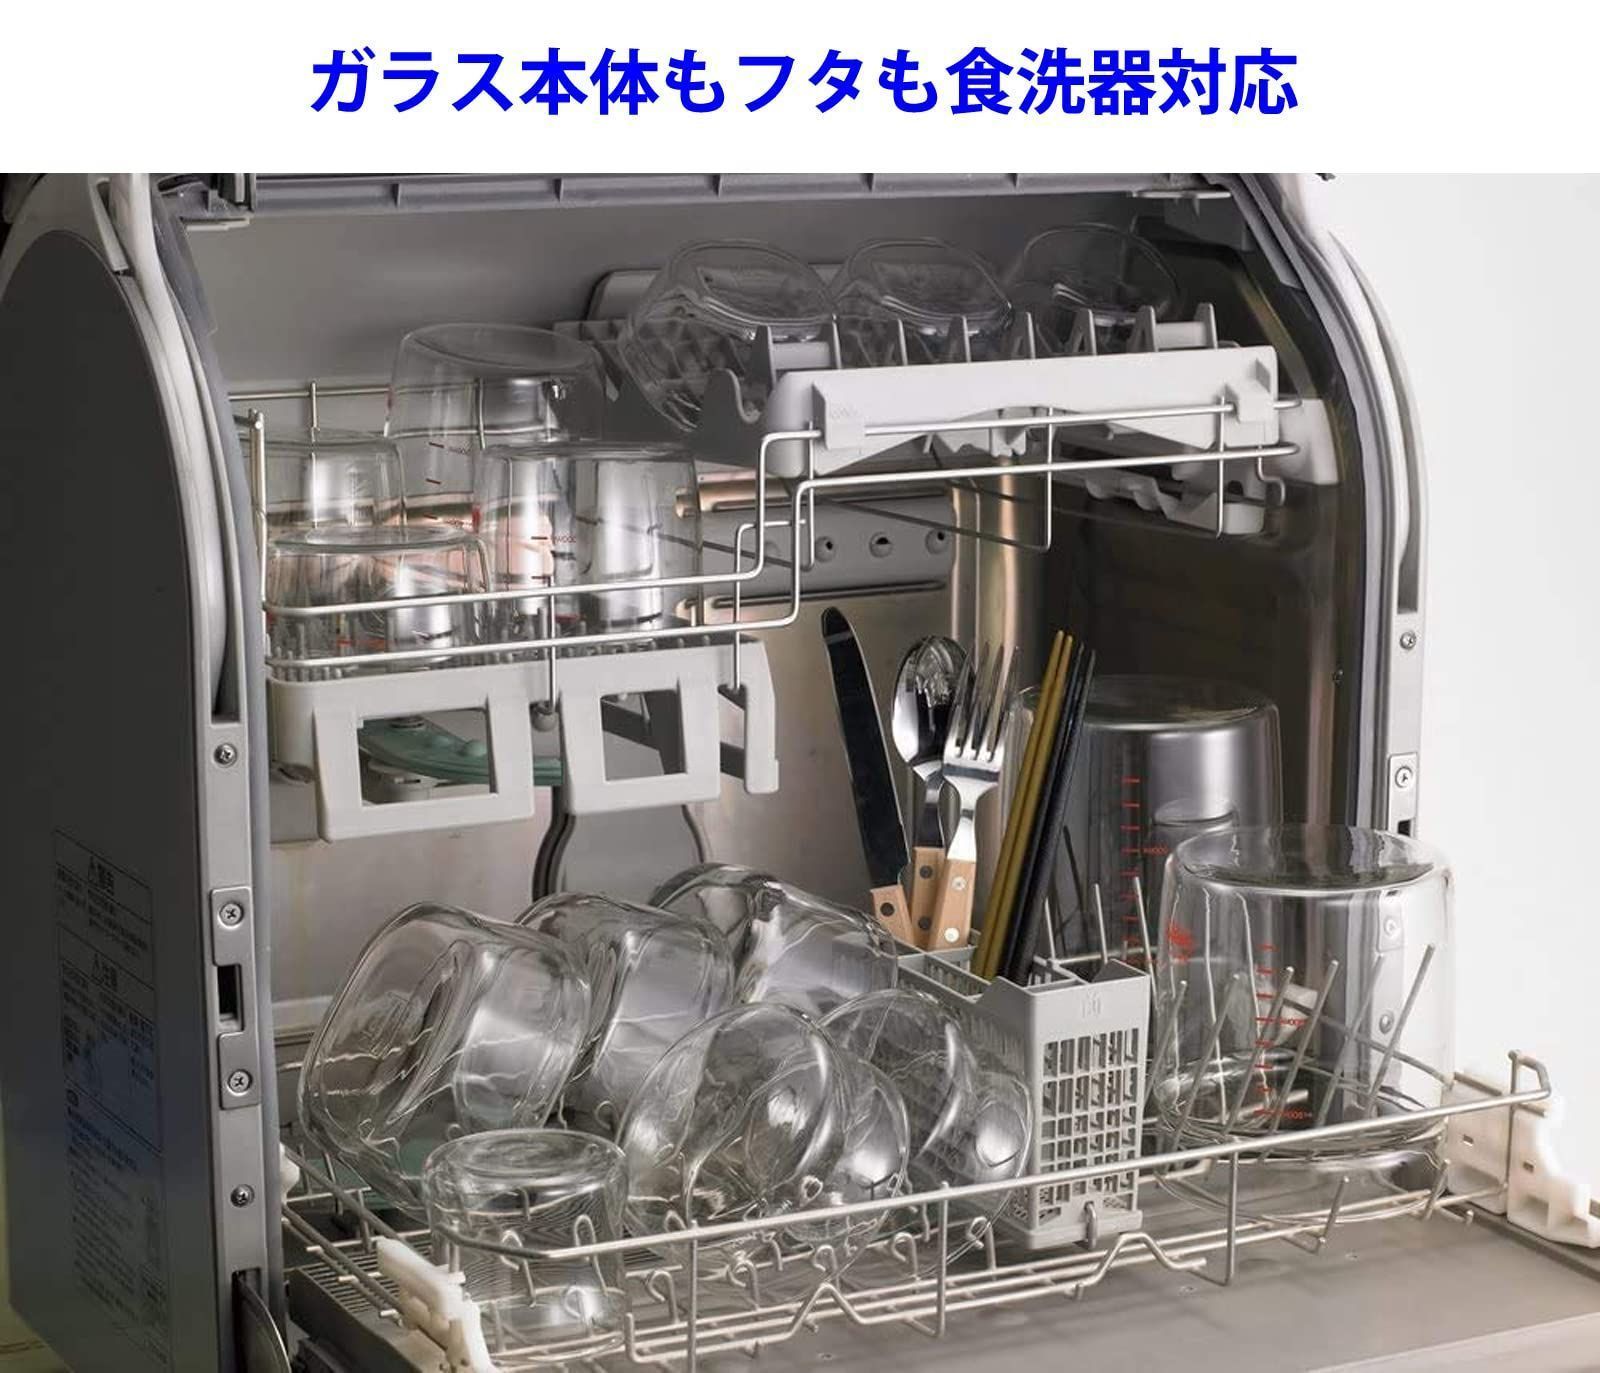 大特価】iwaki(イワキ) 耐熱ガラス 保存容器 S 400ml ×4個セッ ライフスタイル メルカリ